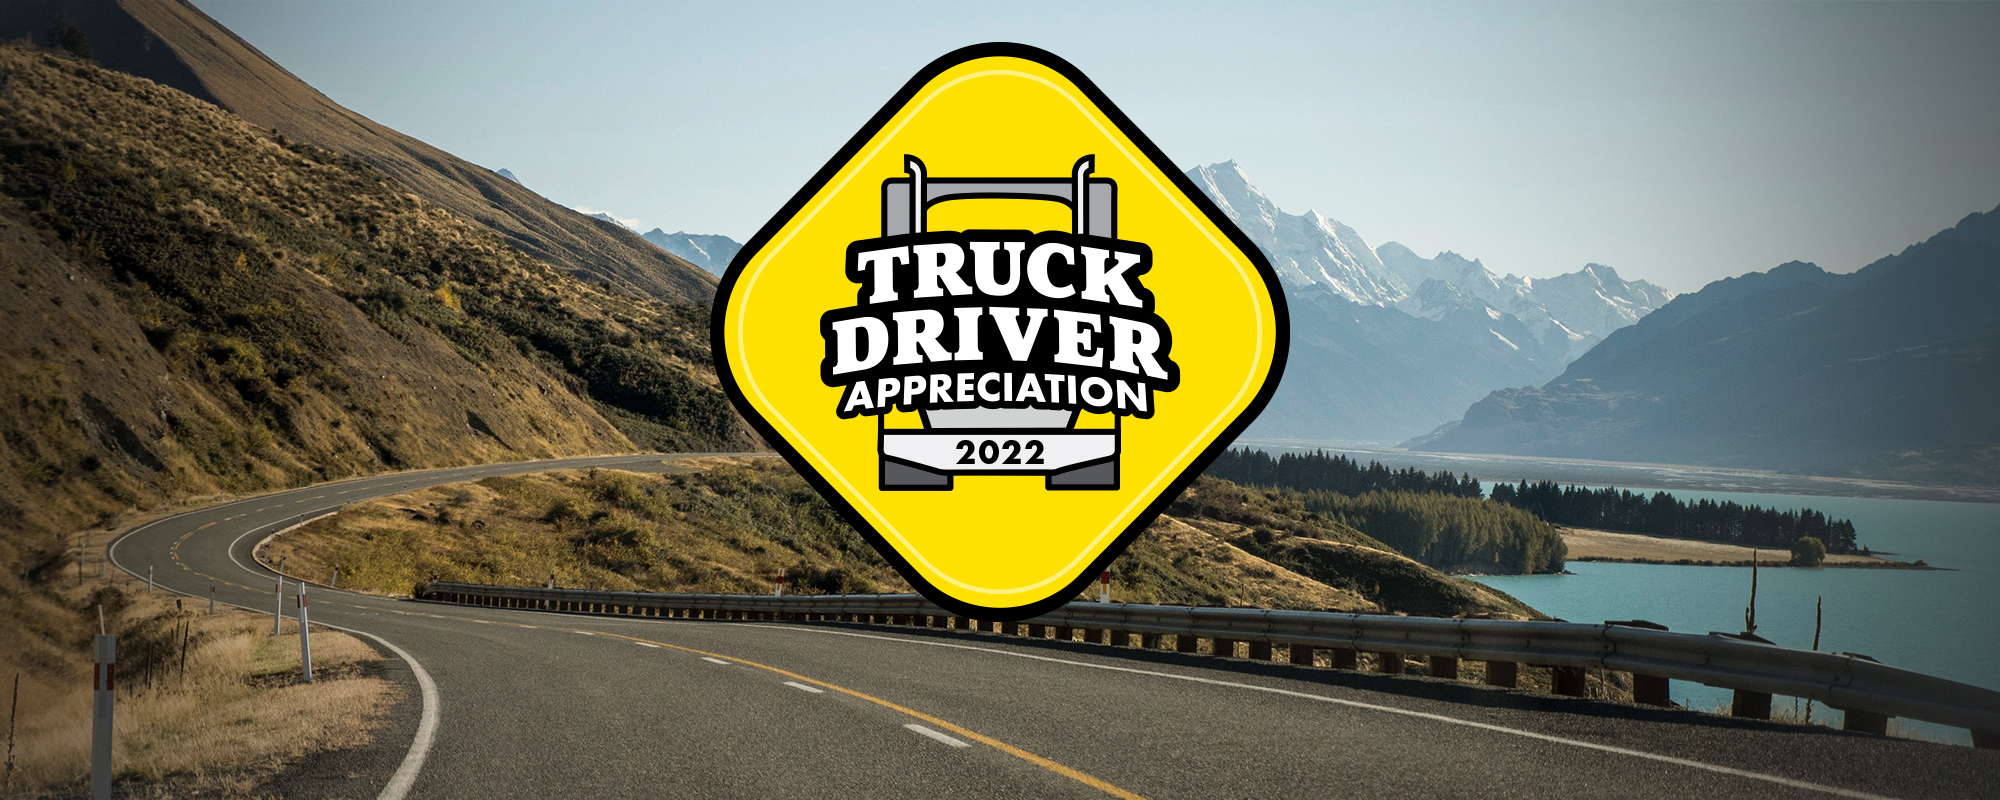 Truck Driver Appreciation graphic